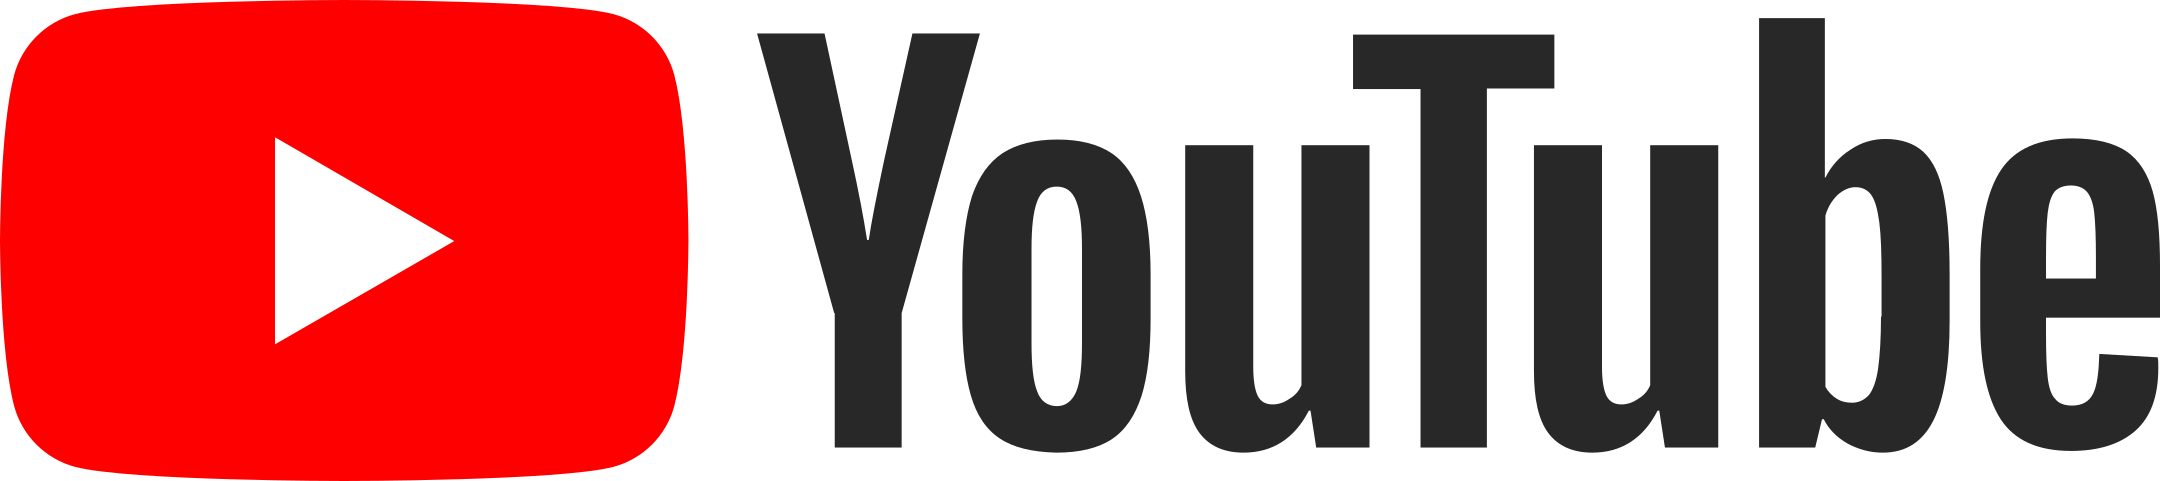 Quadrado YouTube Logotipo livre PNG imagem